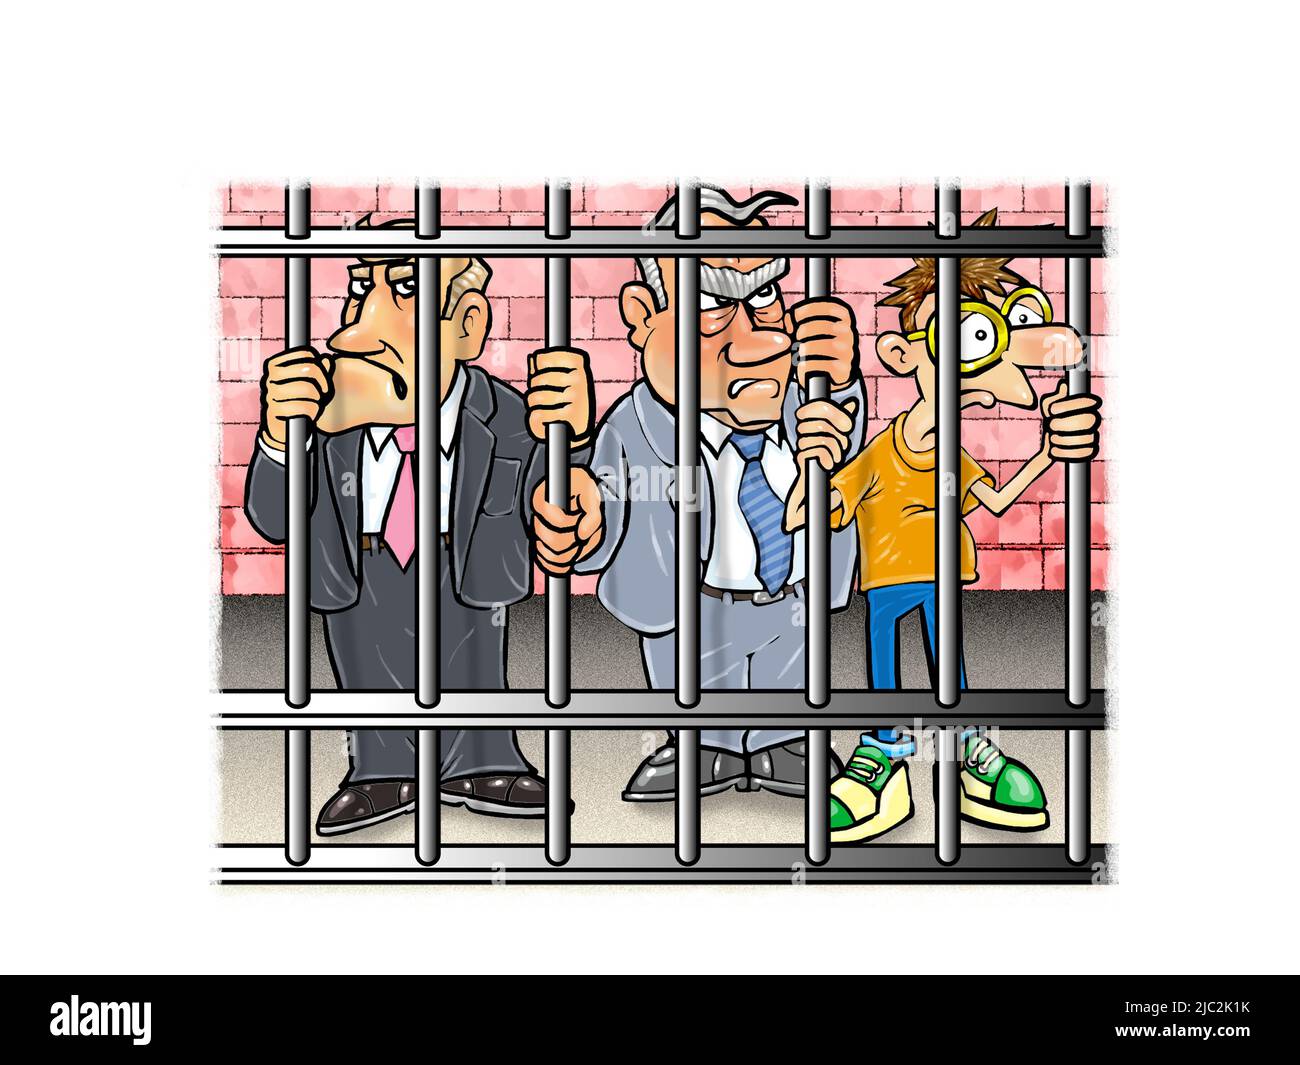 Kunst von 3 Männern hinter Gittern, 2 in Anzügen, ein Geek/Hacker, illustriert das Konzept der Unternehmenskriminalität, die von Wirtschaftsfachleuten begangen wird Stockfoto